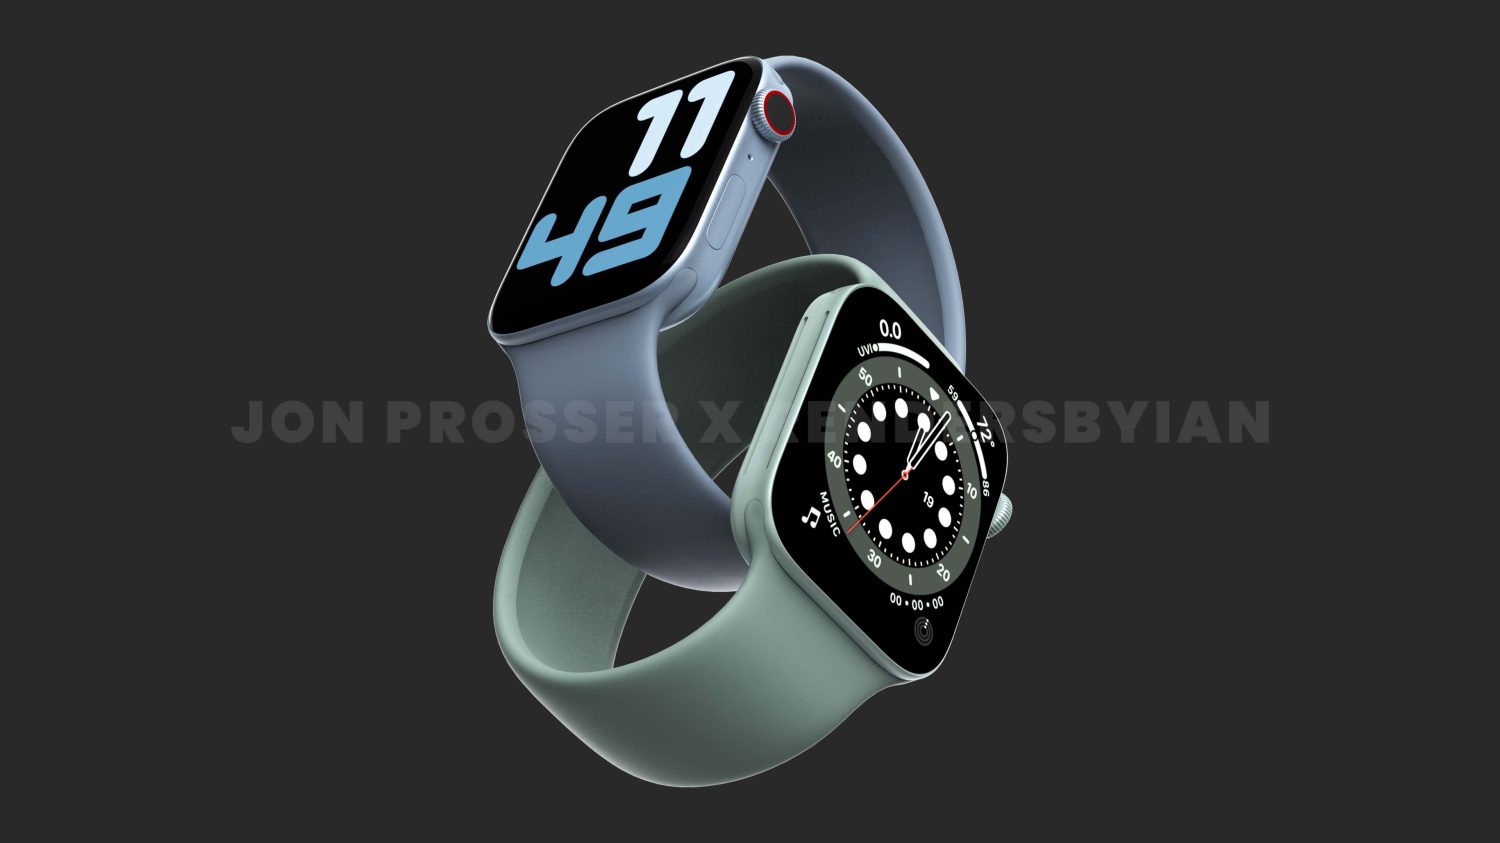 Selon Jon Prosser, l'Apple Watch 7 reprendrait le design des derniers iPhone